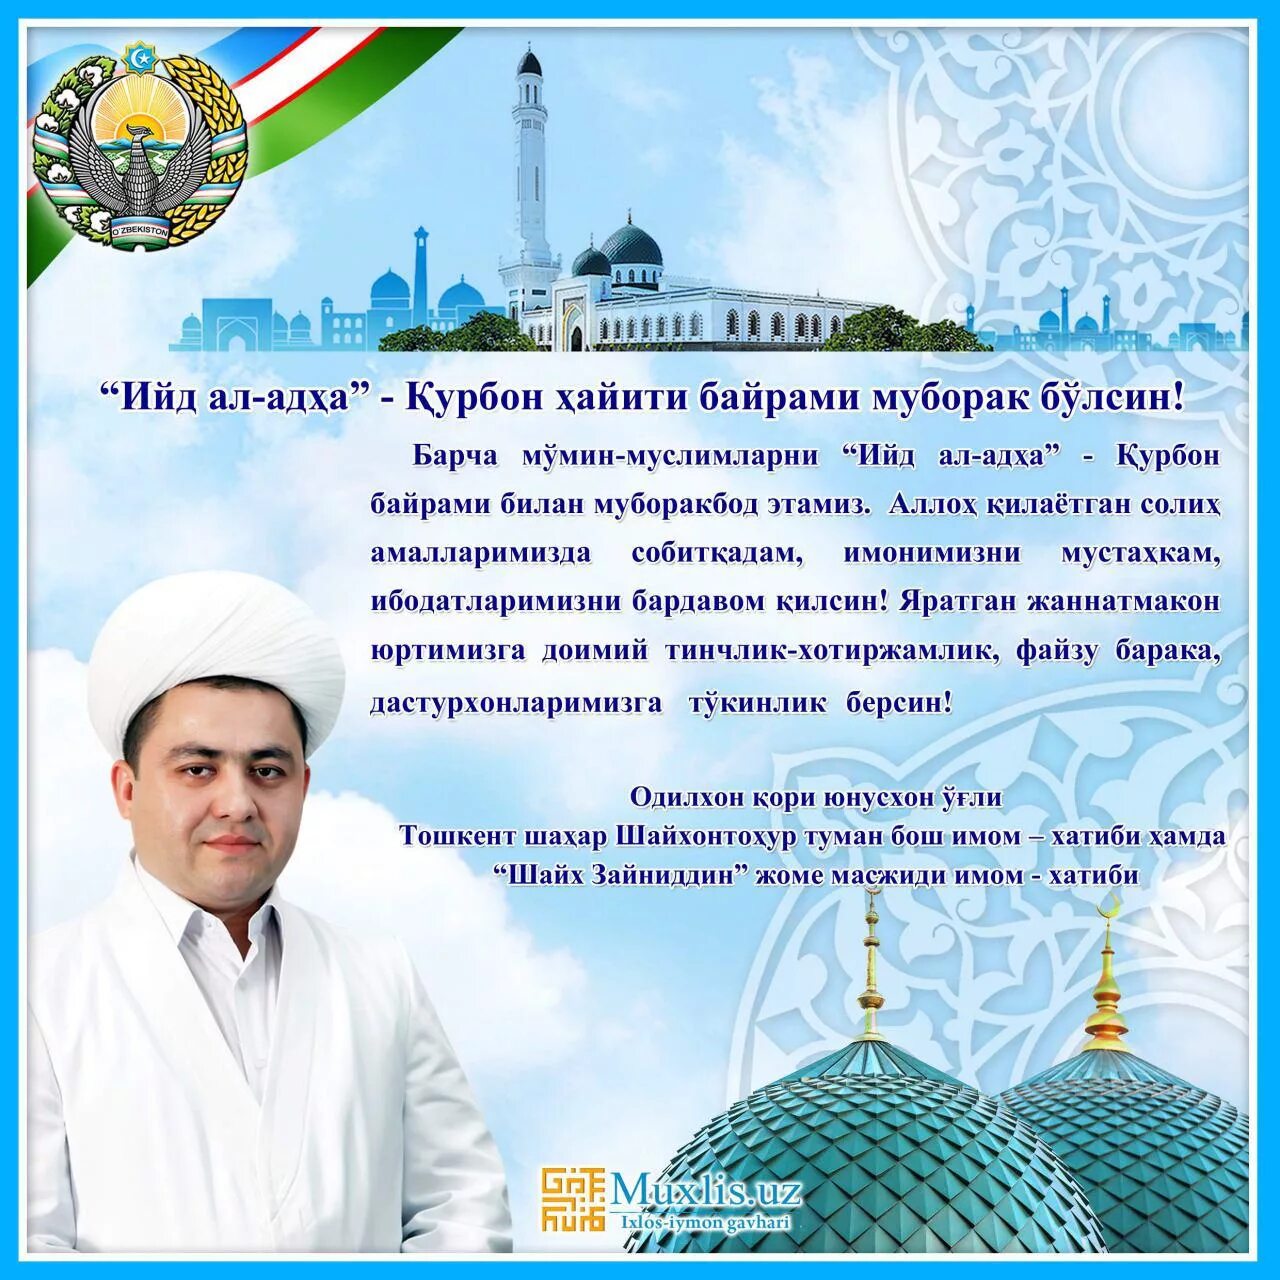 Хайт байрам. Поздравление на узбекском языке. Рамазон Хаит муборак. Курбан байрам муборак булсин.